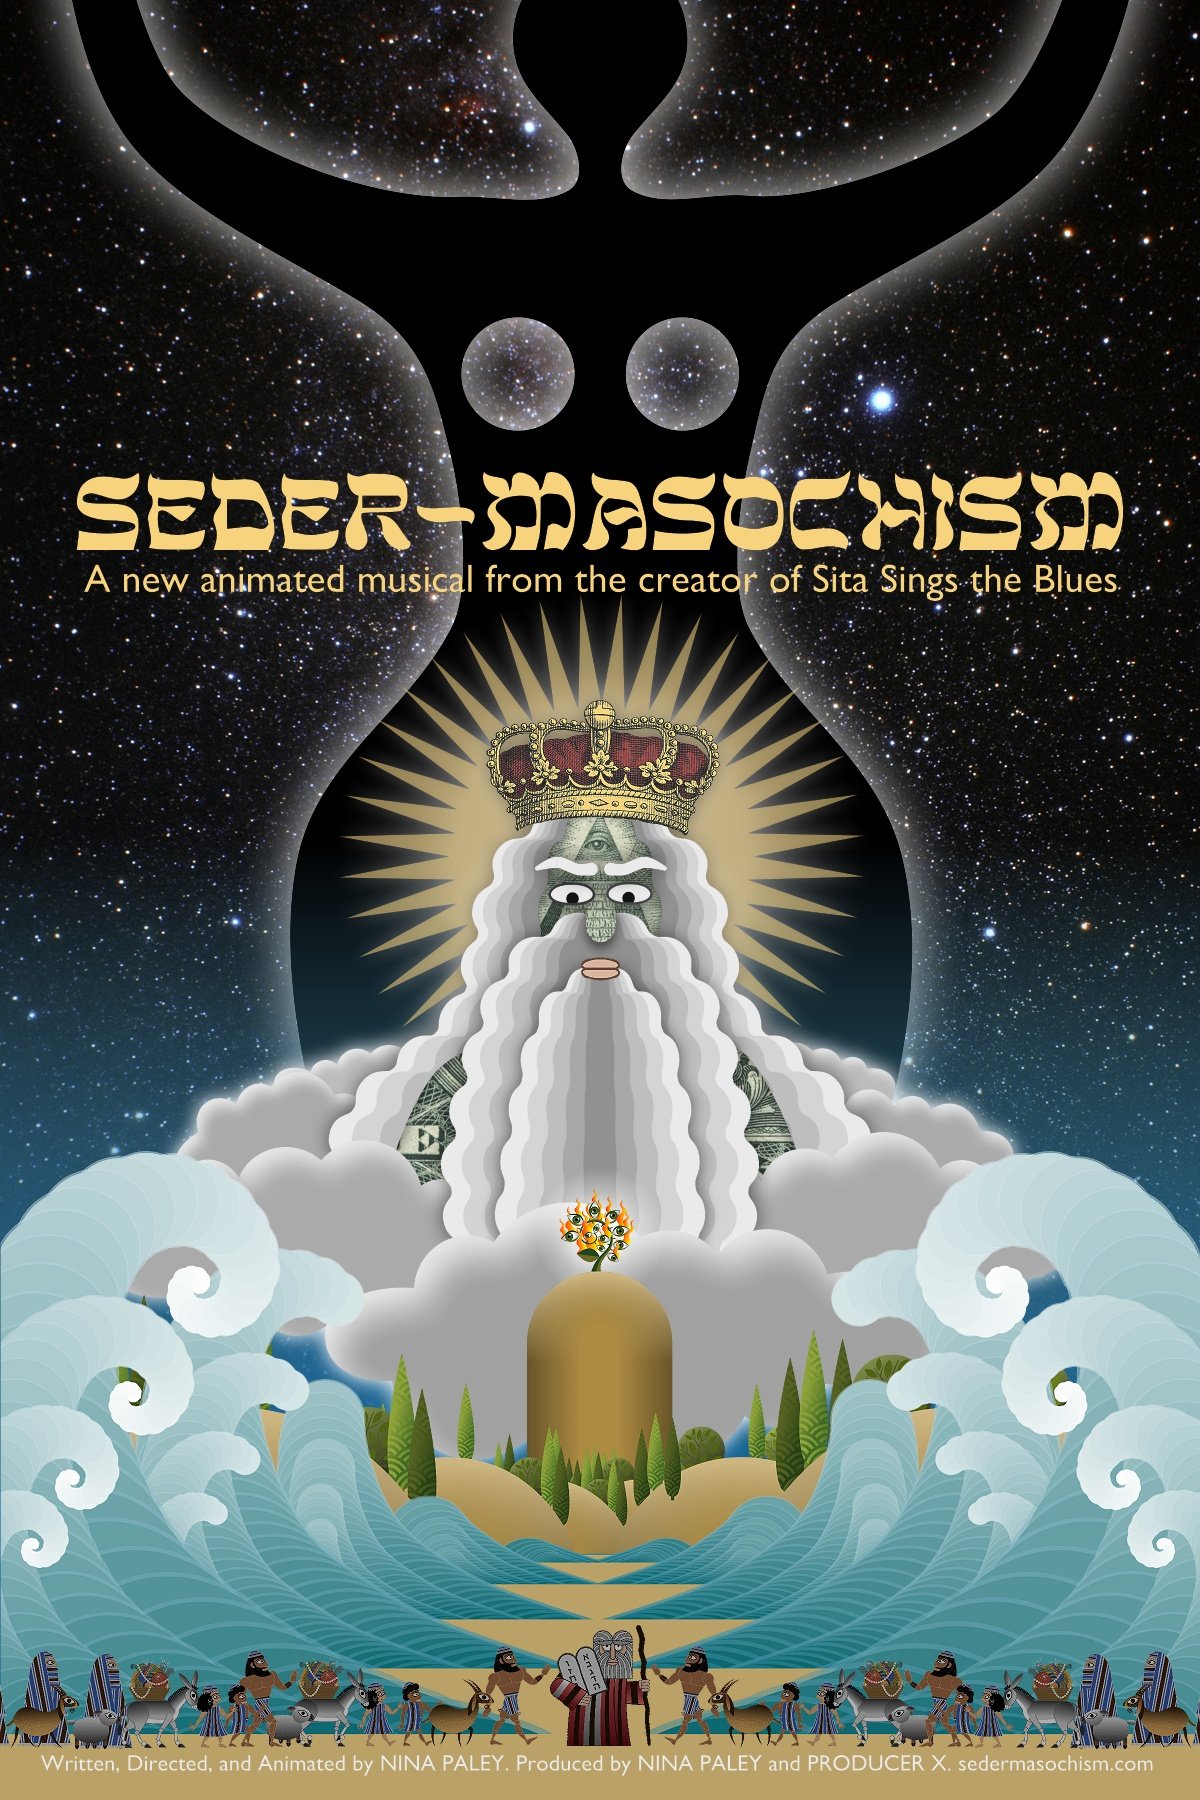 Seder-Masochism - Wikipedia